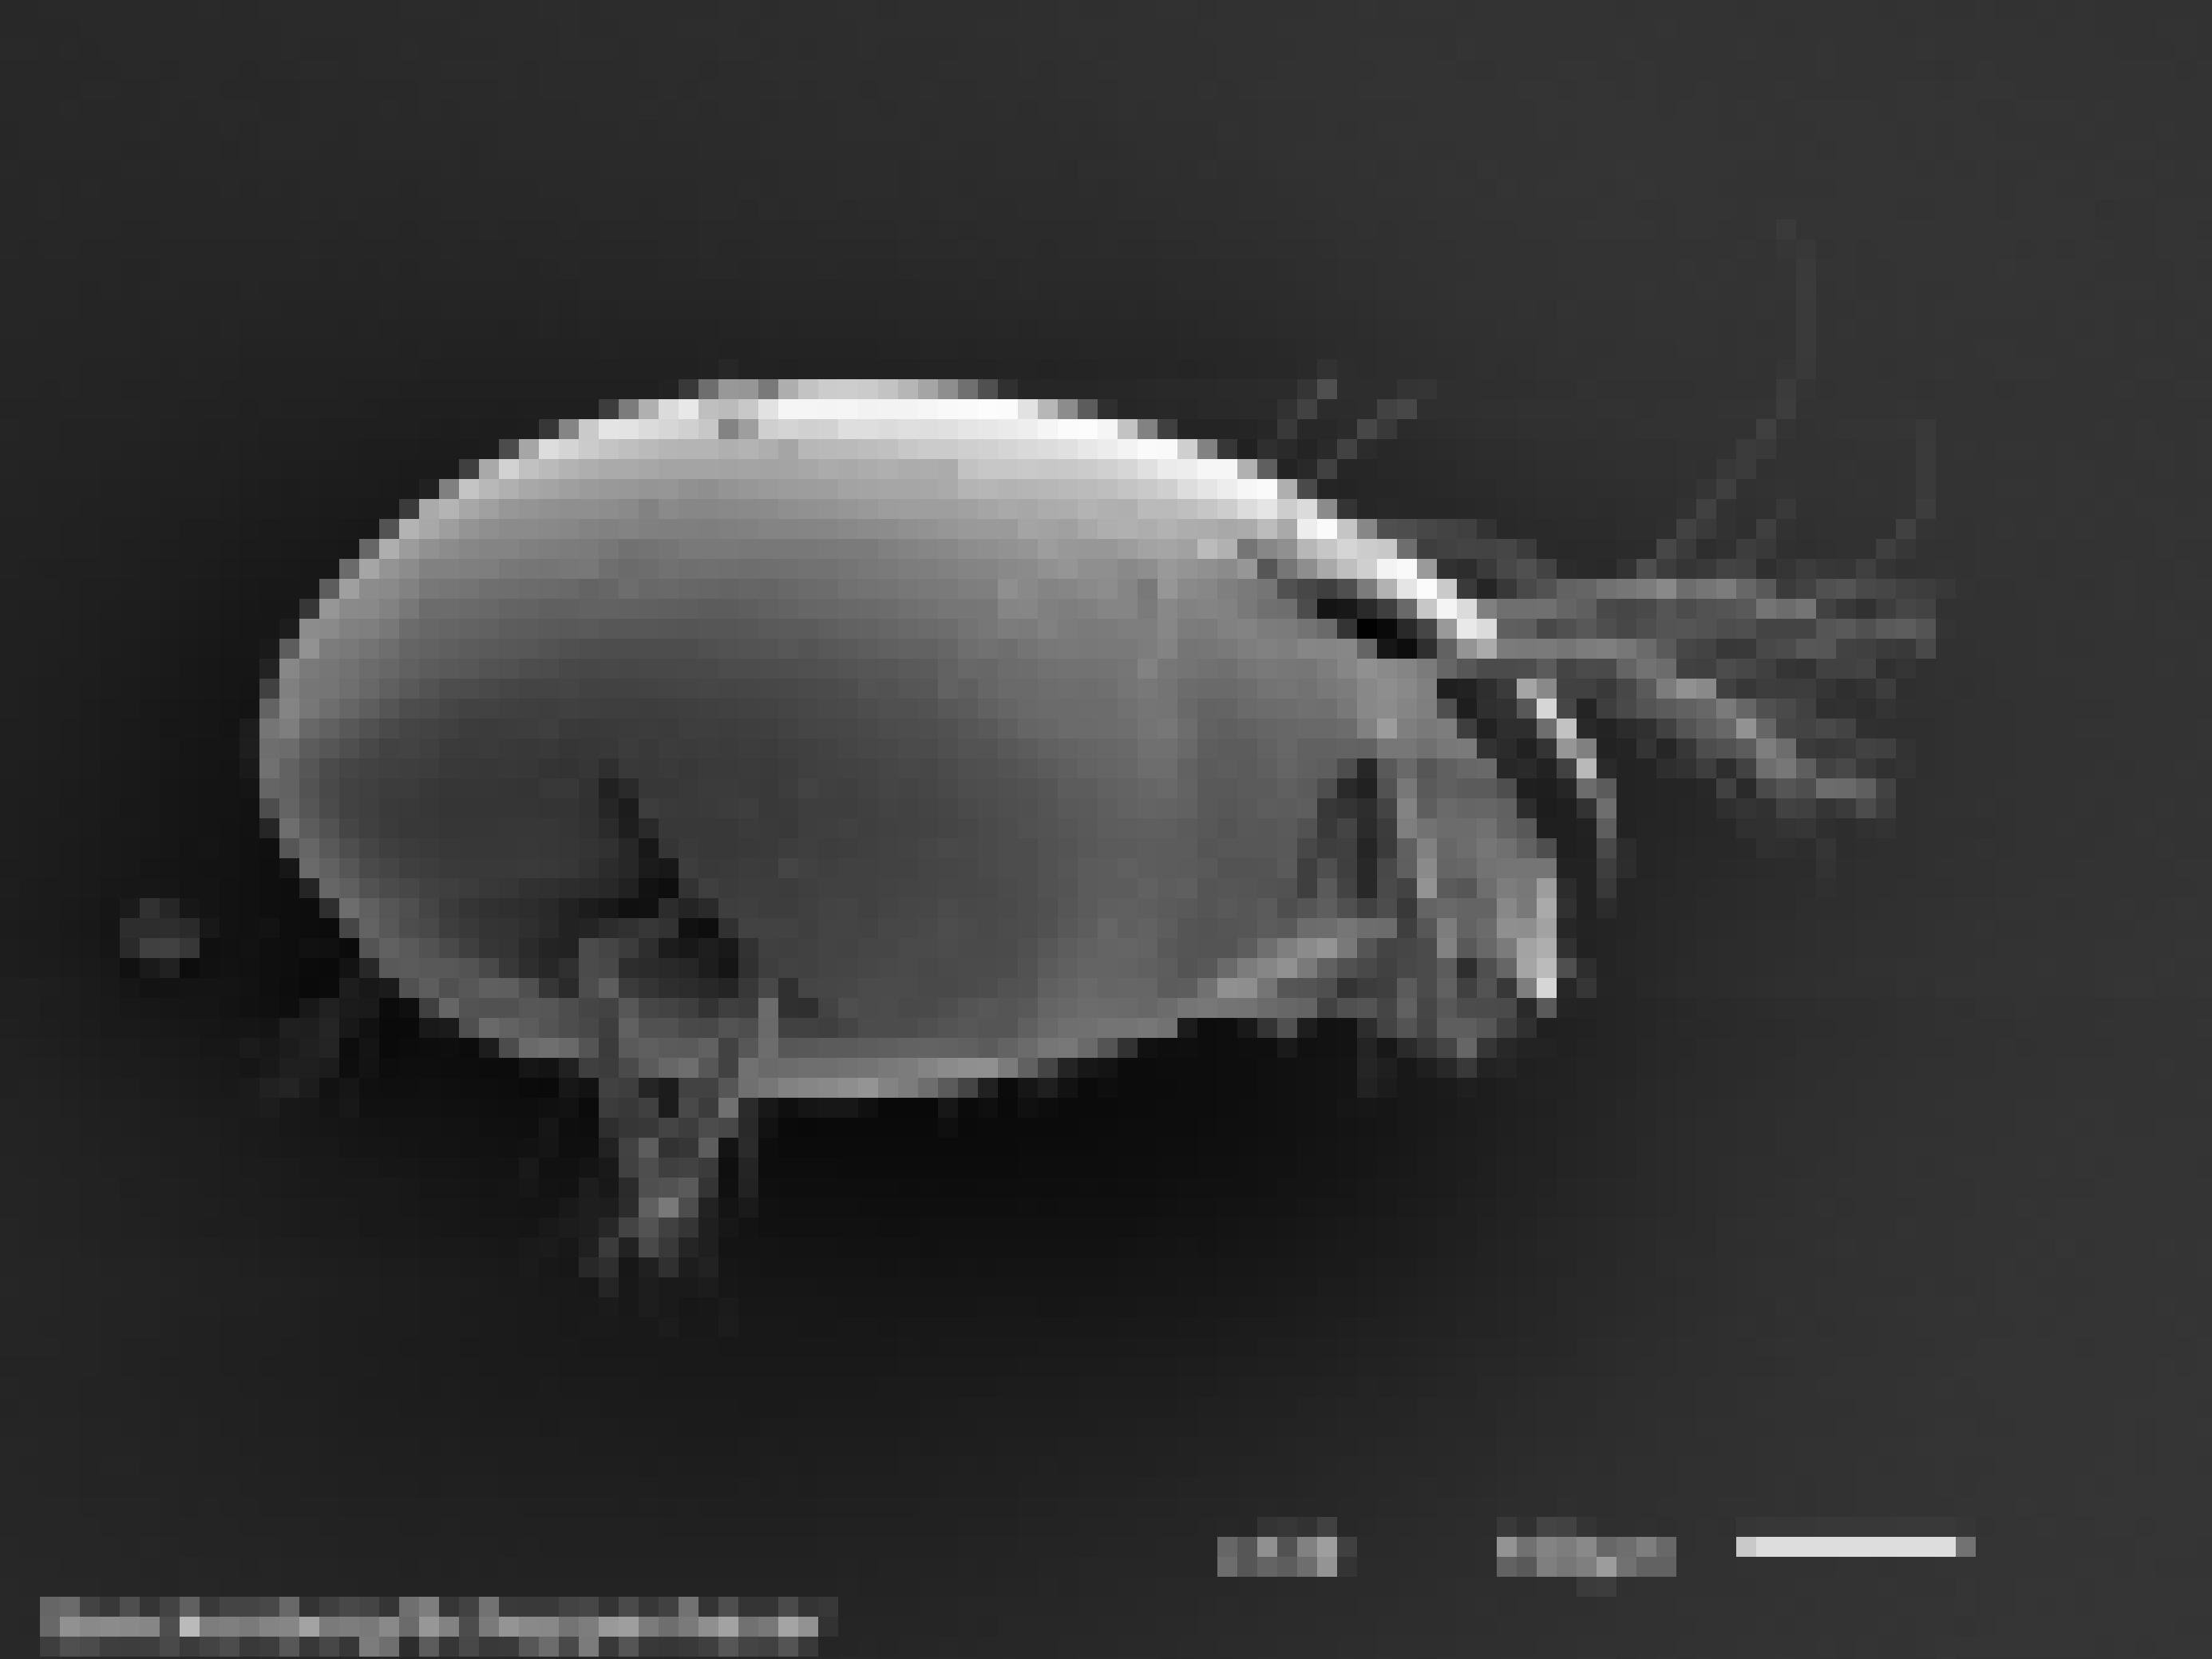 Mikroskopbild eines grauen Tieres, das aussieht wir ein Ei mit Falten, aus denen Beine und Fühler ragen vor schwarzem Hintergrund, 130-fach vergrößert.